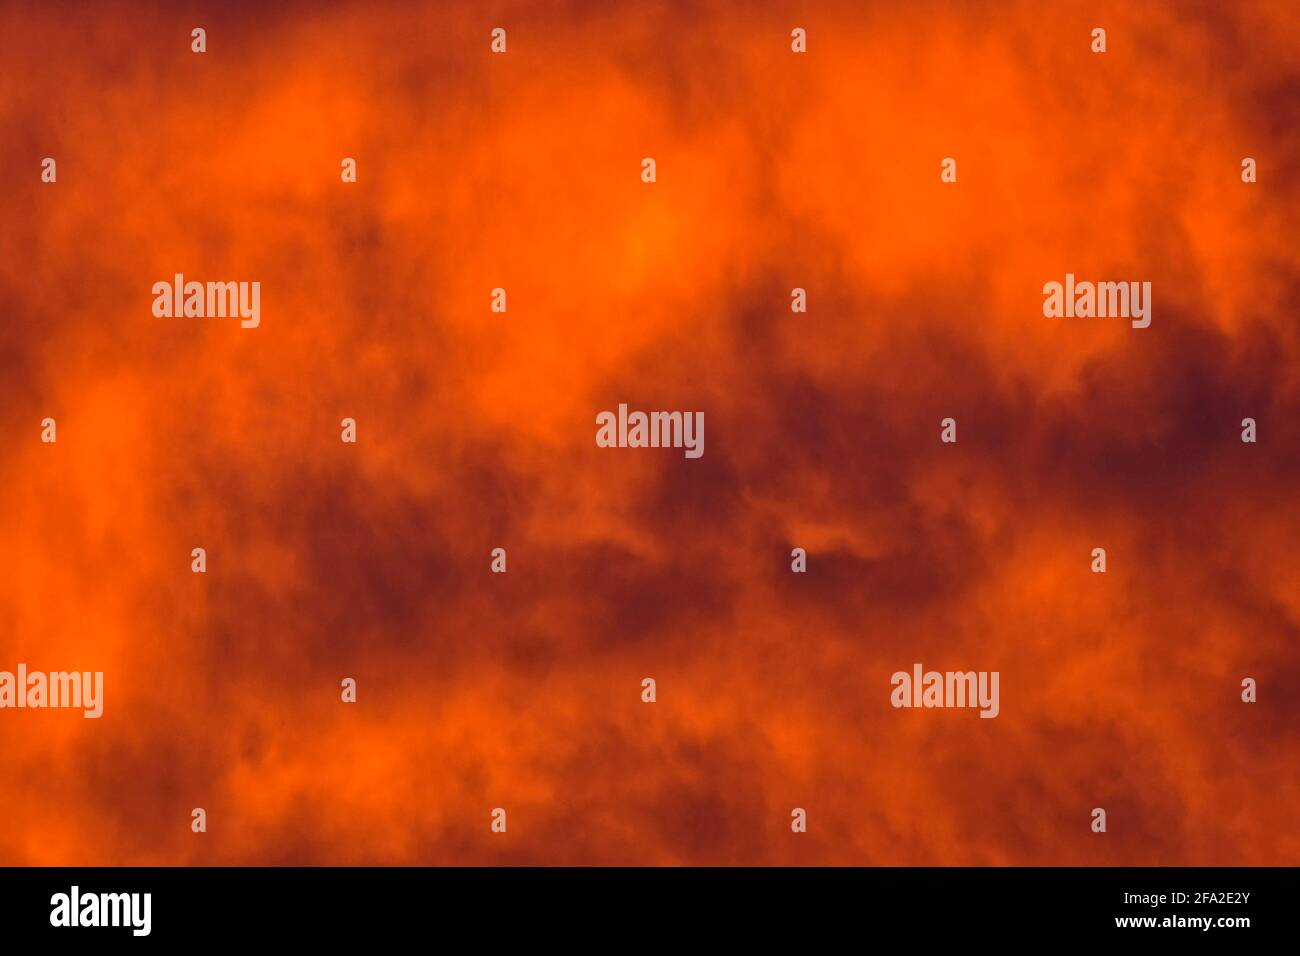 Concetto astratto immagine di sfondo di nuvole scure in fuoco migliorato Arancio inverno tramonto cielo Inghilterra Gran Bretagna Regno Unito Regno Unito Foto Stock